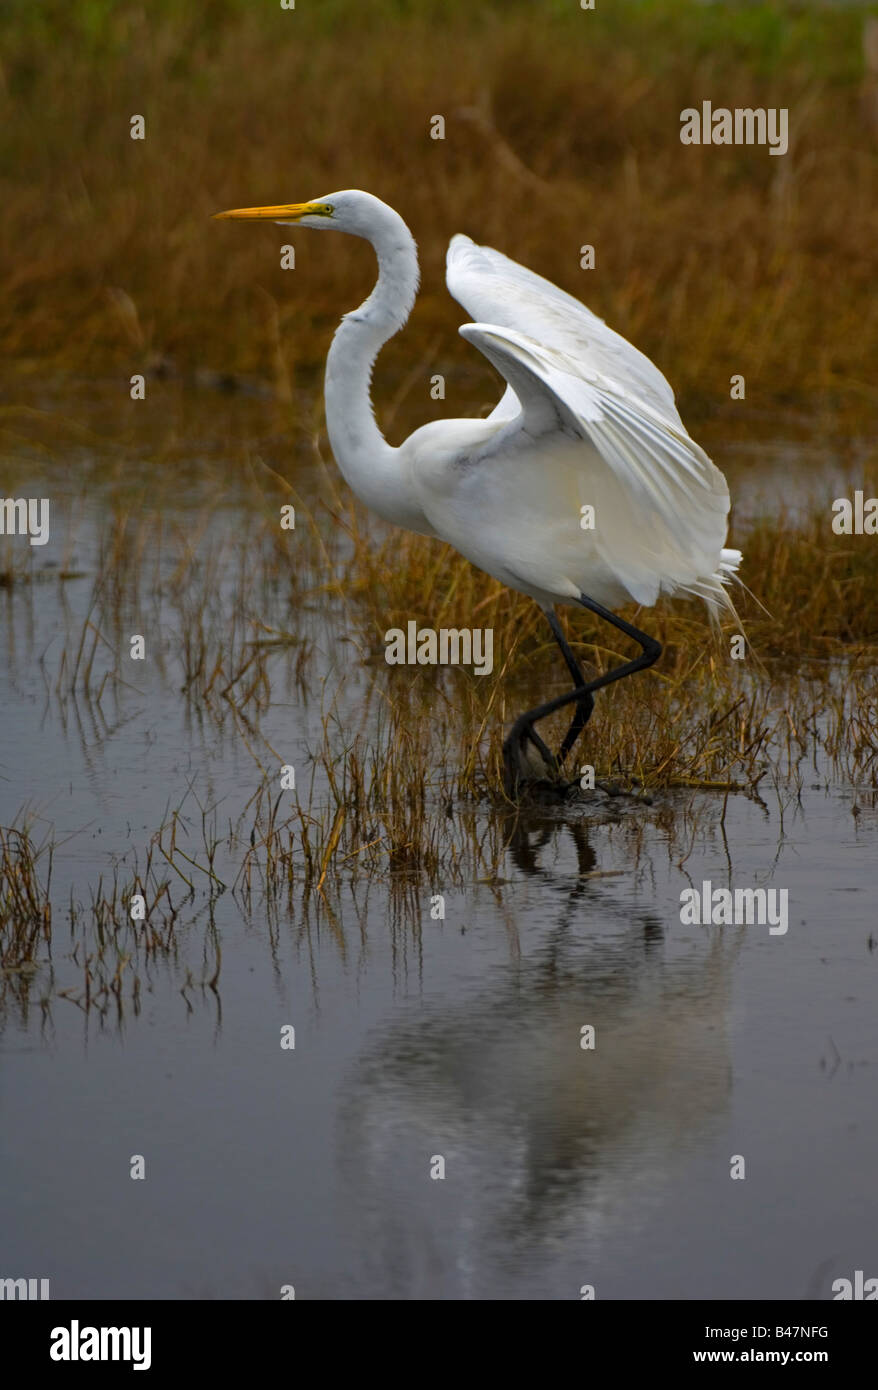 Airone bianco maggiore caccia stalking wading bird acqua Foto Stock